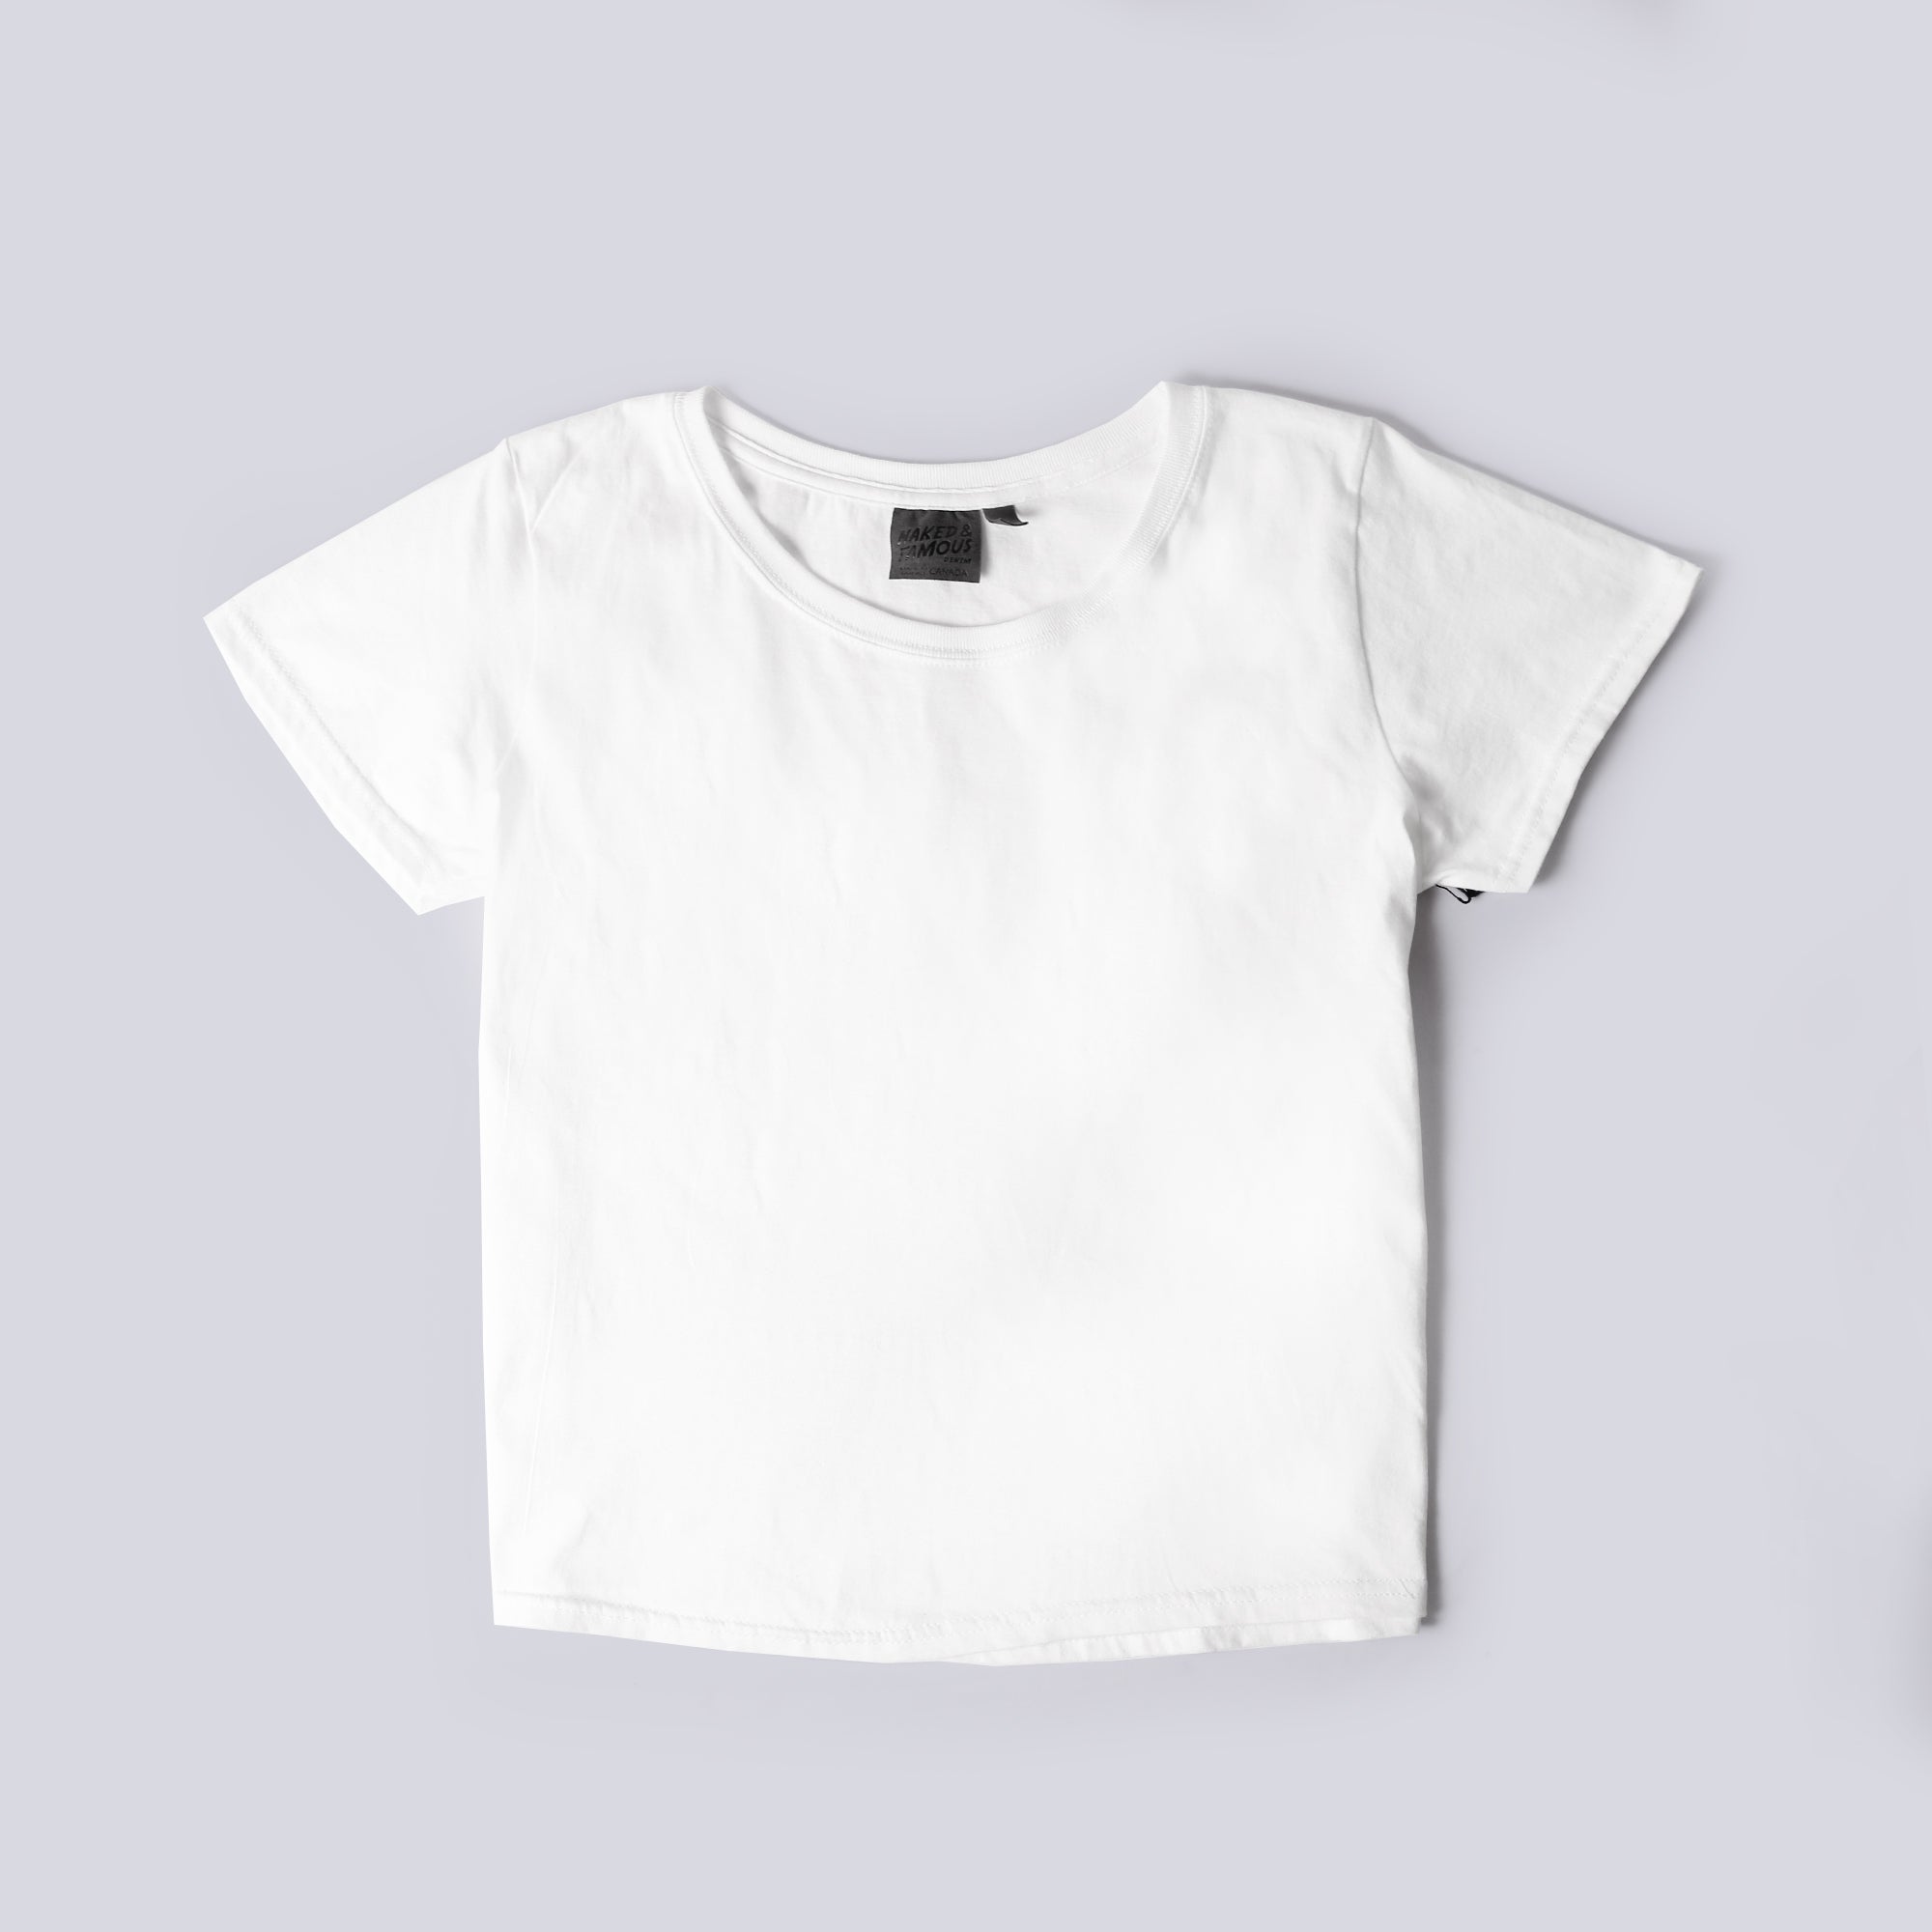 Women's Circular Knit Tshirt - Ringspun Cotton - White